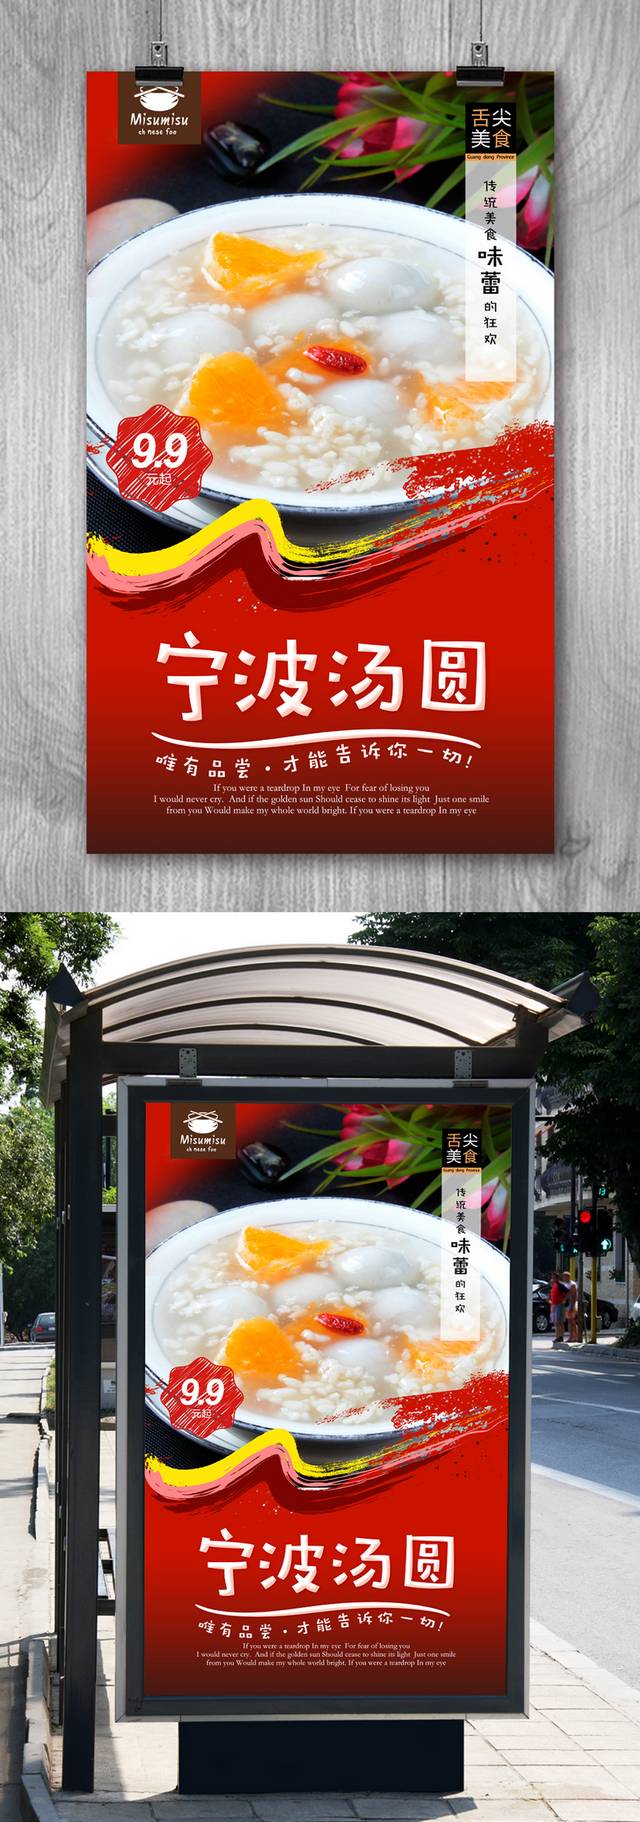 红色高档宁波汤圆宣传海报设计